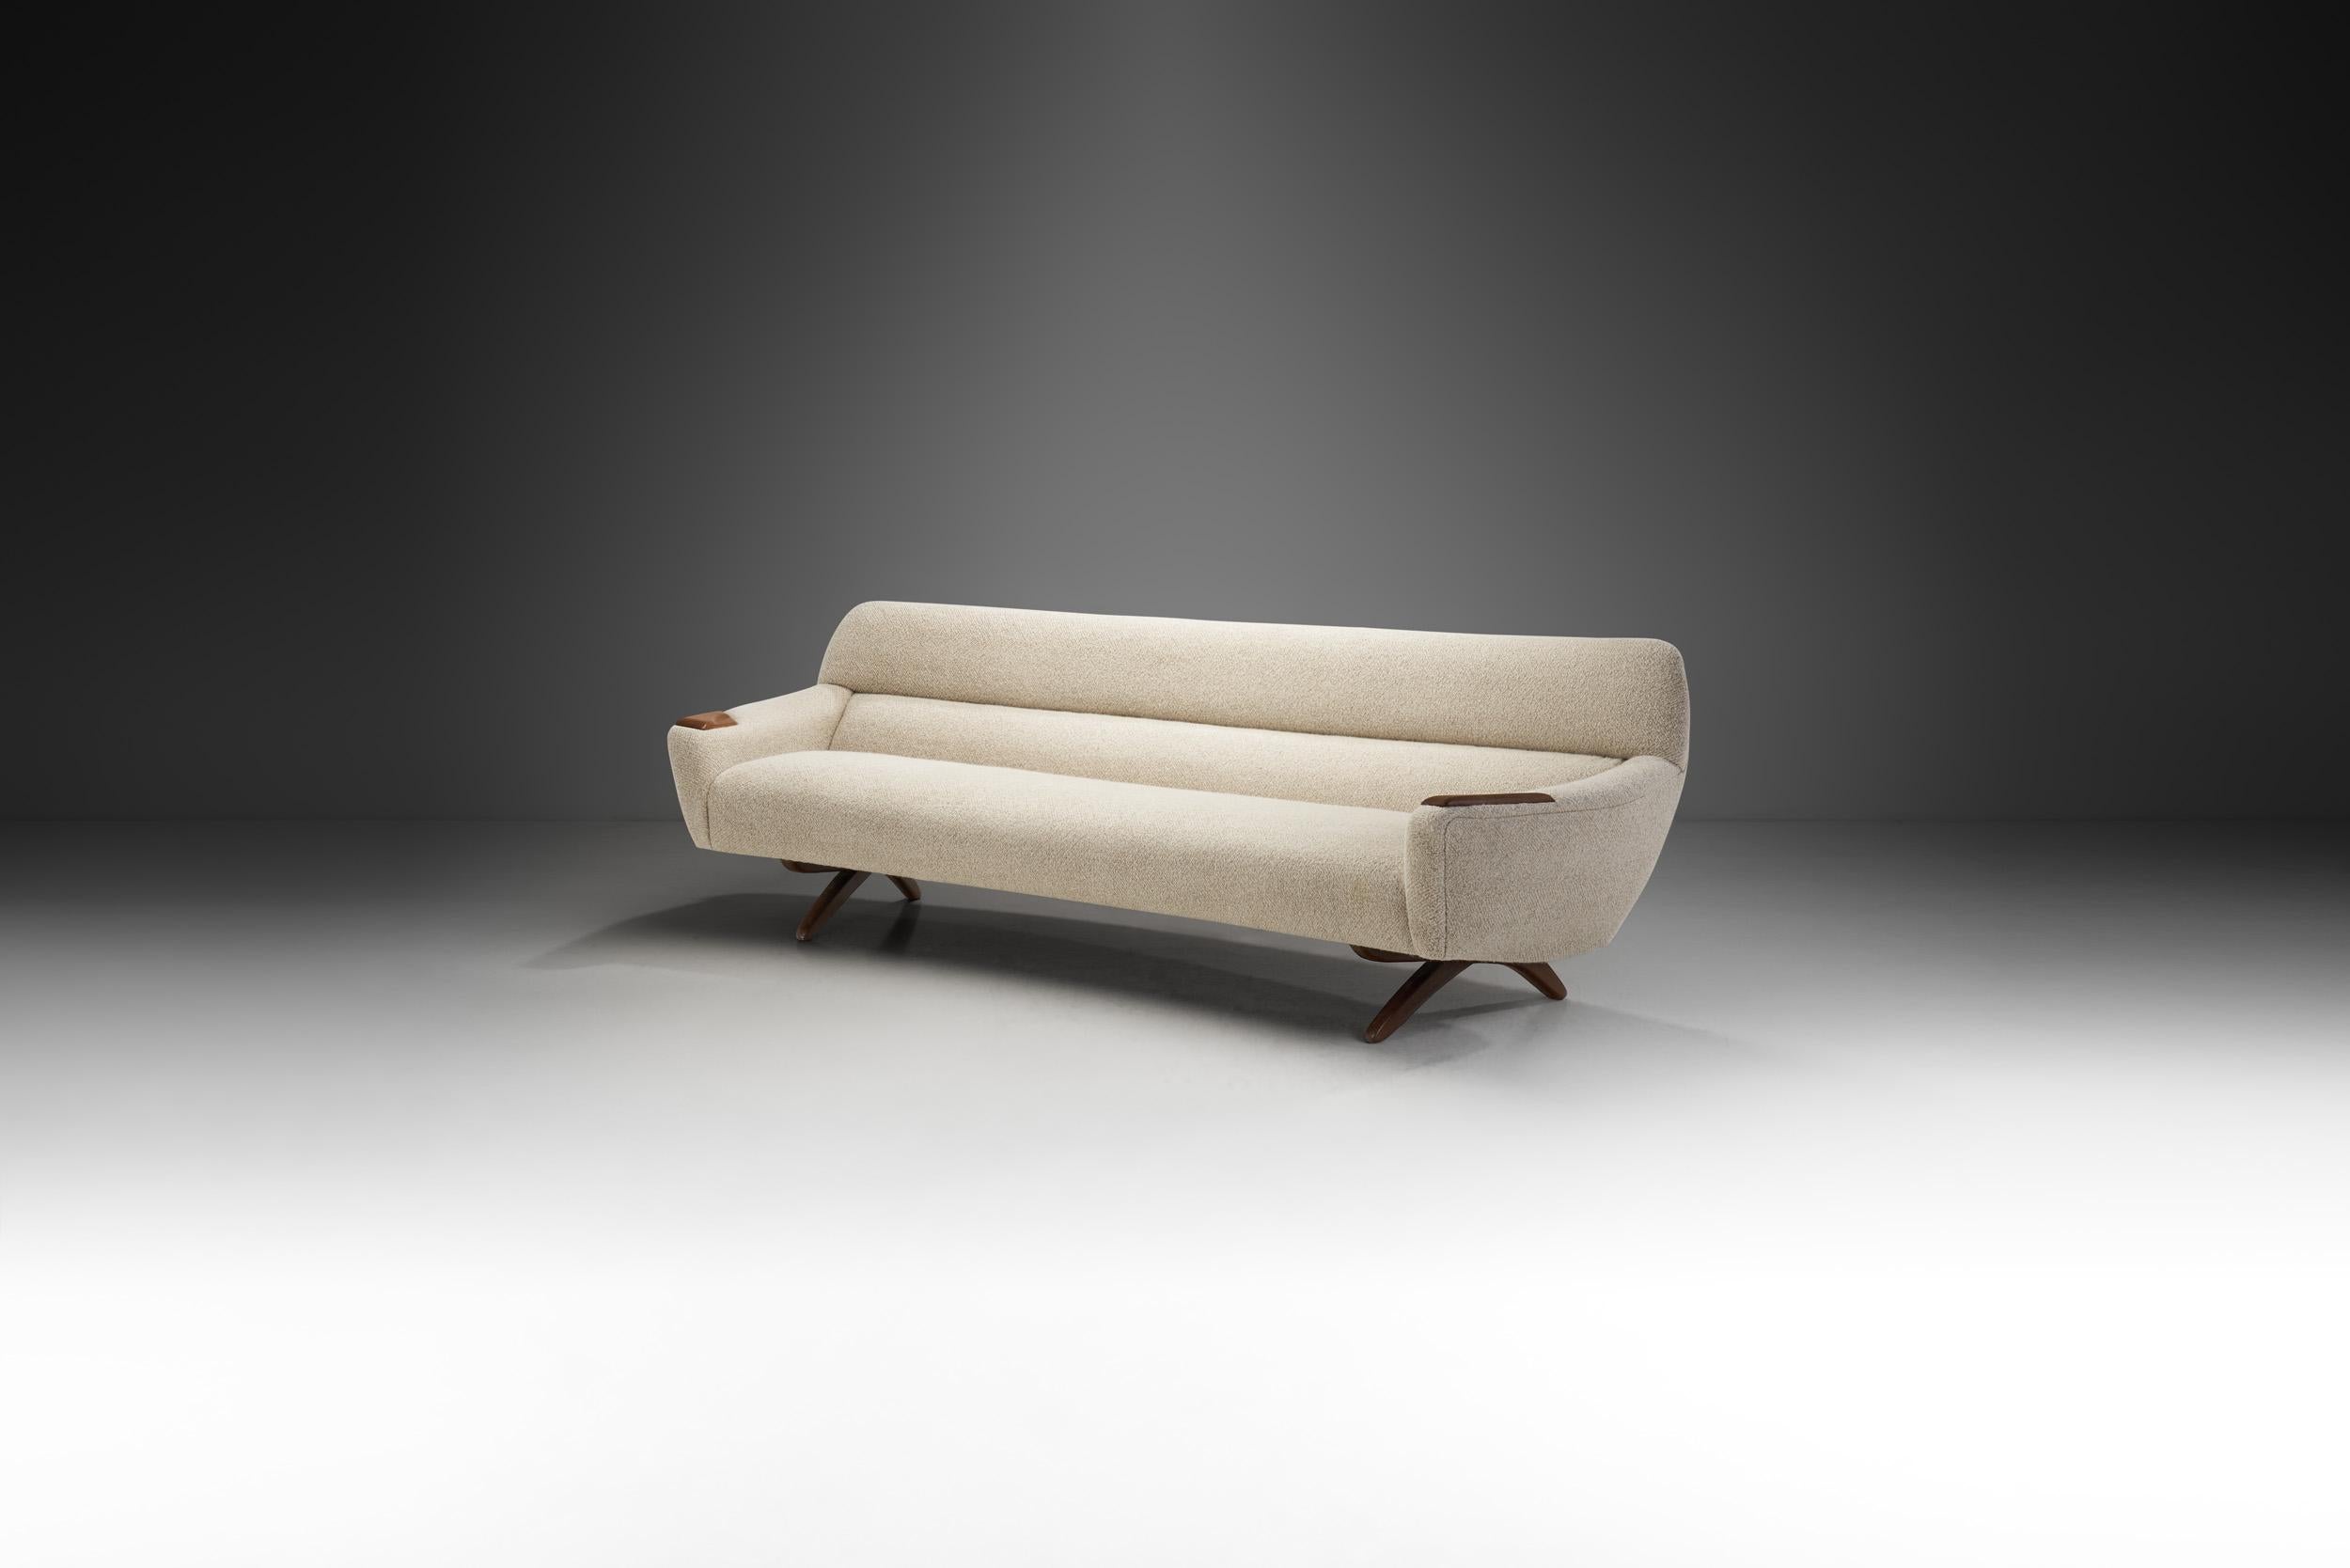 Le canapé modèle 62 de Leif Hansen est communément appelé 